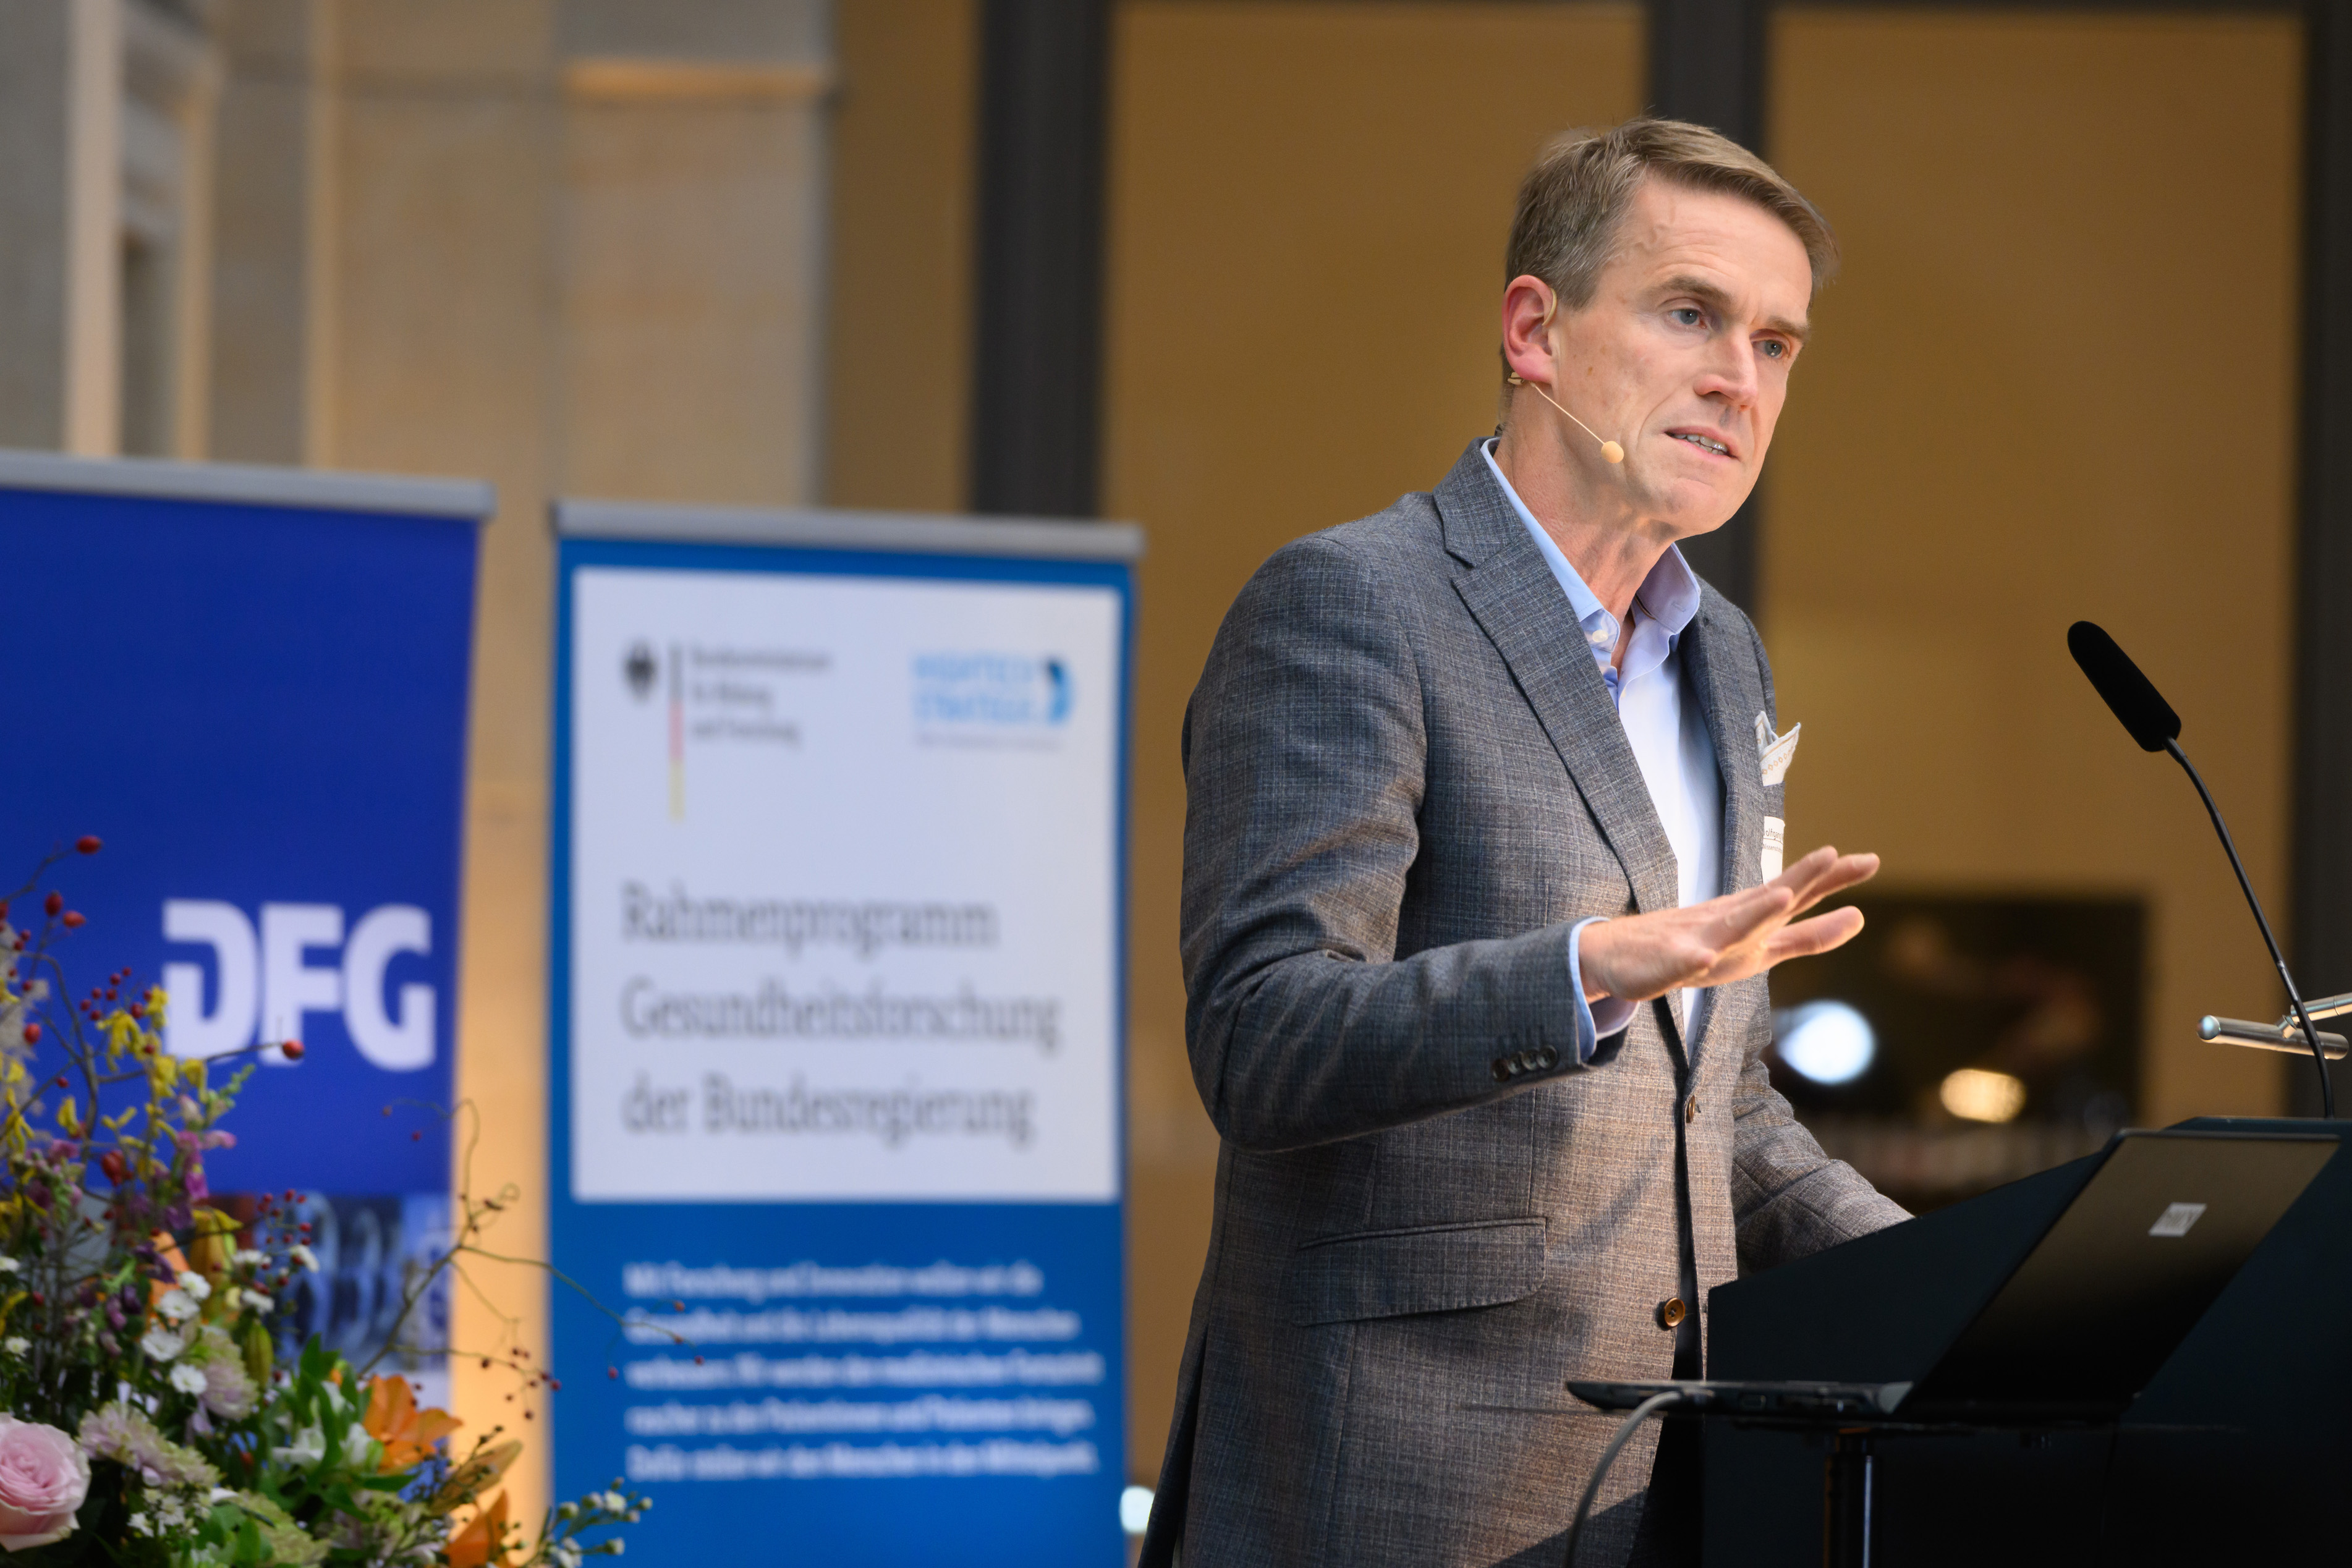 „Wenn wir in Deutschland mehr und bessere klinische Studien – und damit eine bessere Versorgung – wollen“, sagte der Wissenschaftsratsvorsitzende Professor Dr. Wolfgang Wick, „müssen wir sie also endlich wirklich attraktiver machen.“